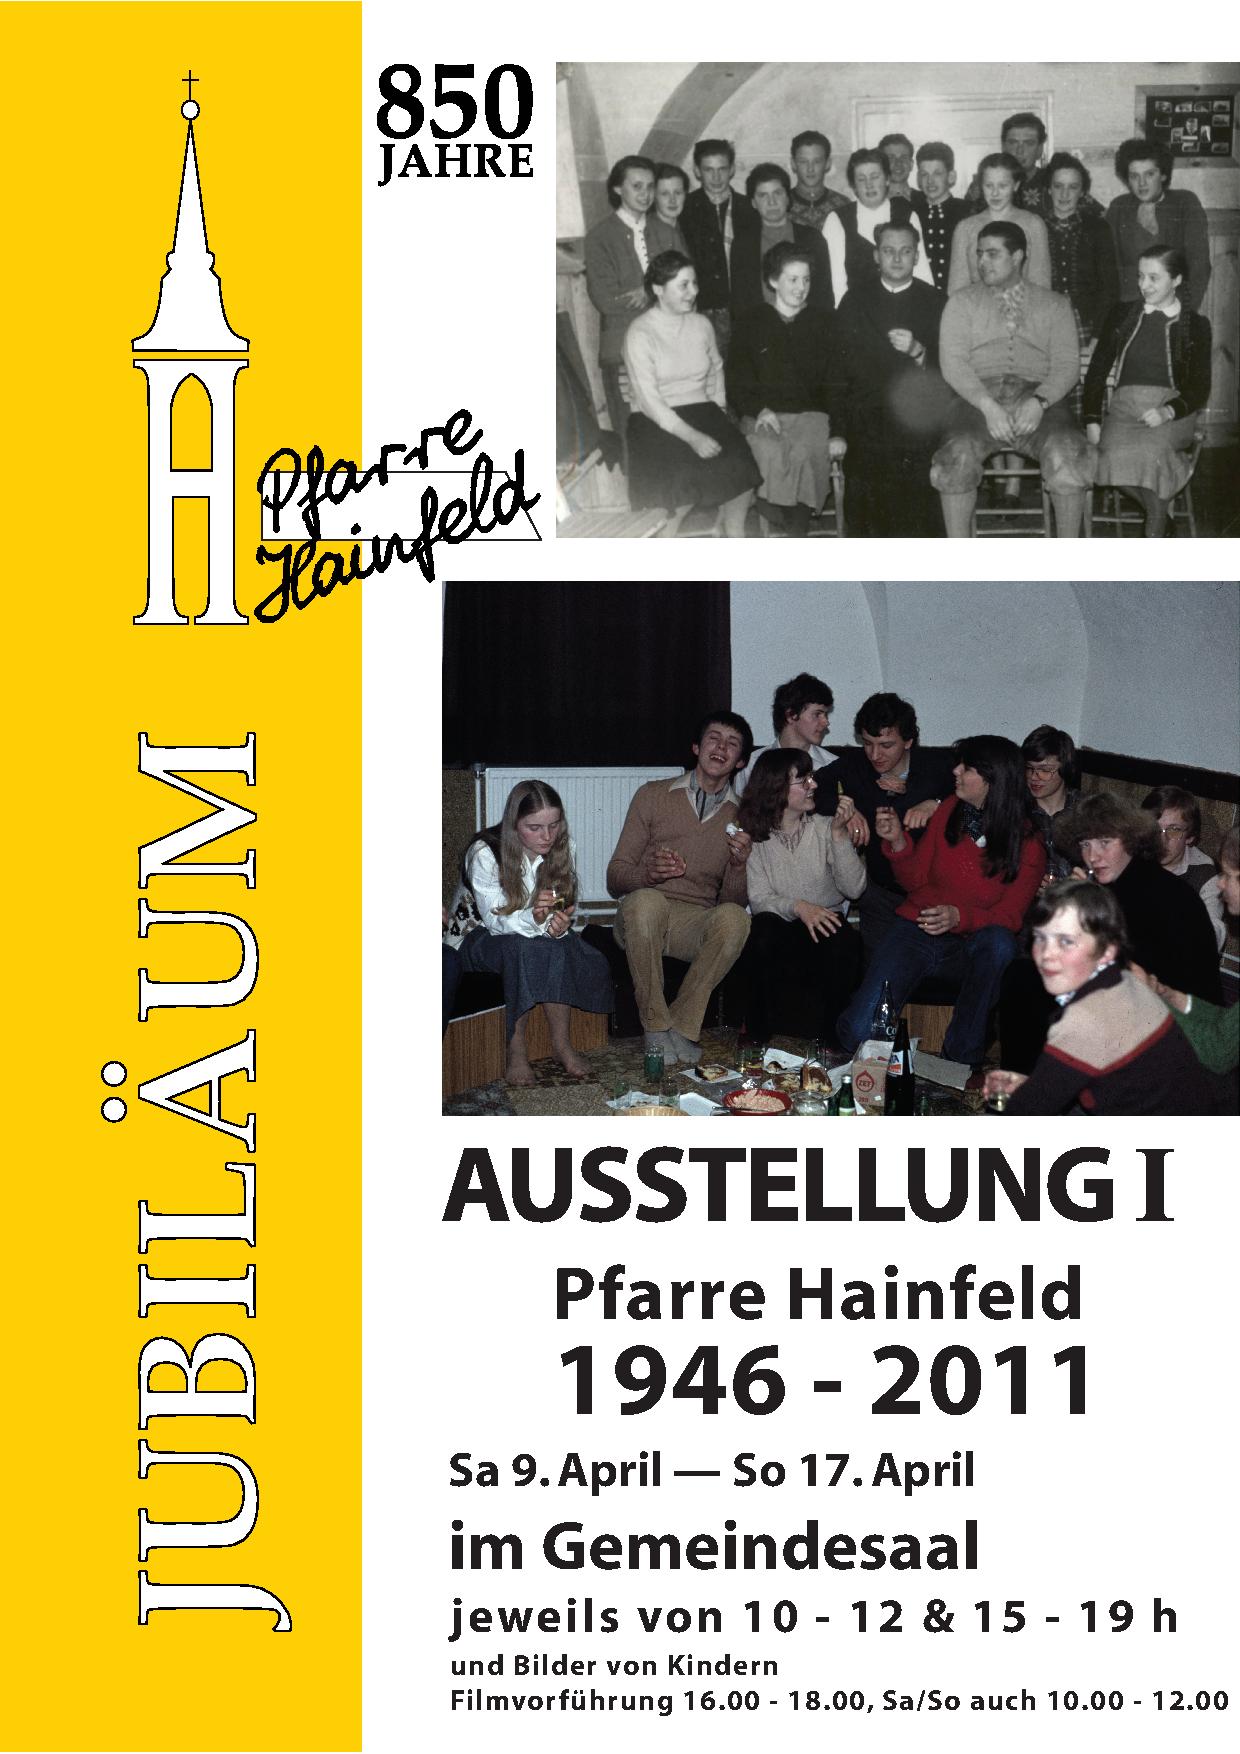 Plakat Ausstellung1 Pfarre Hainfeld von 1946 - 2011